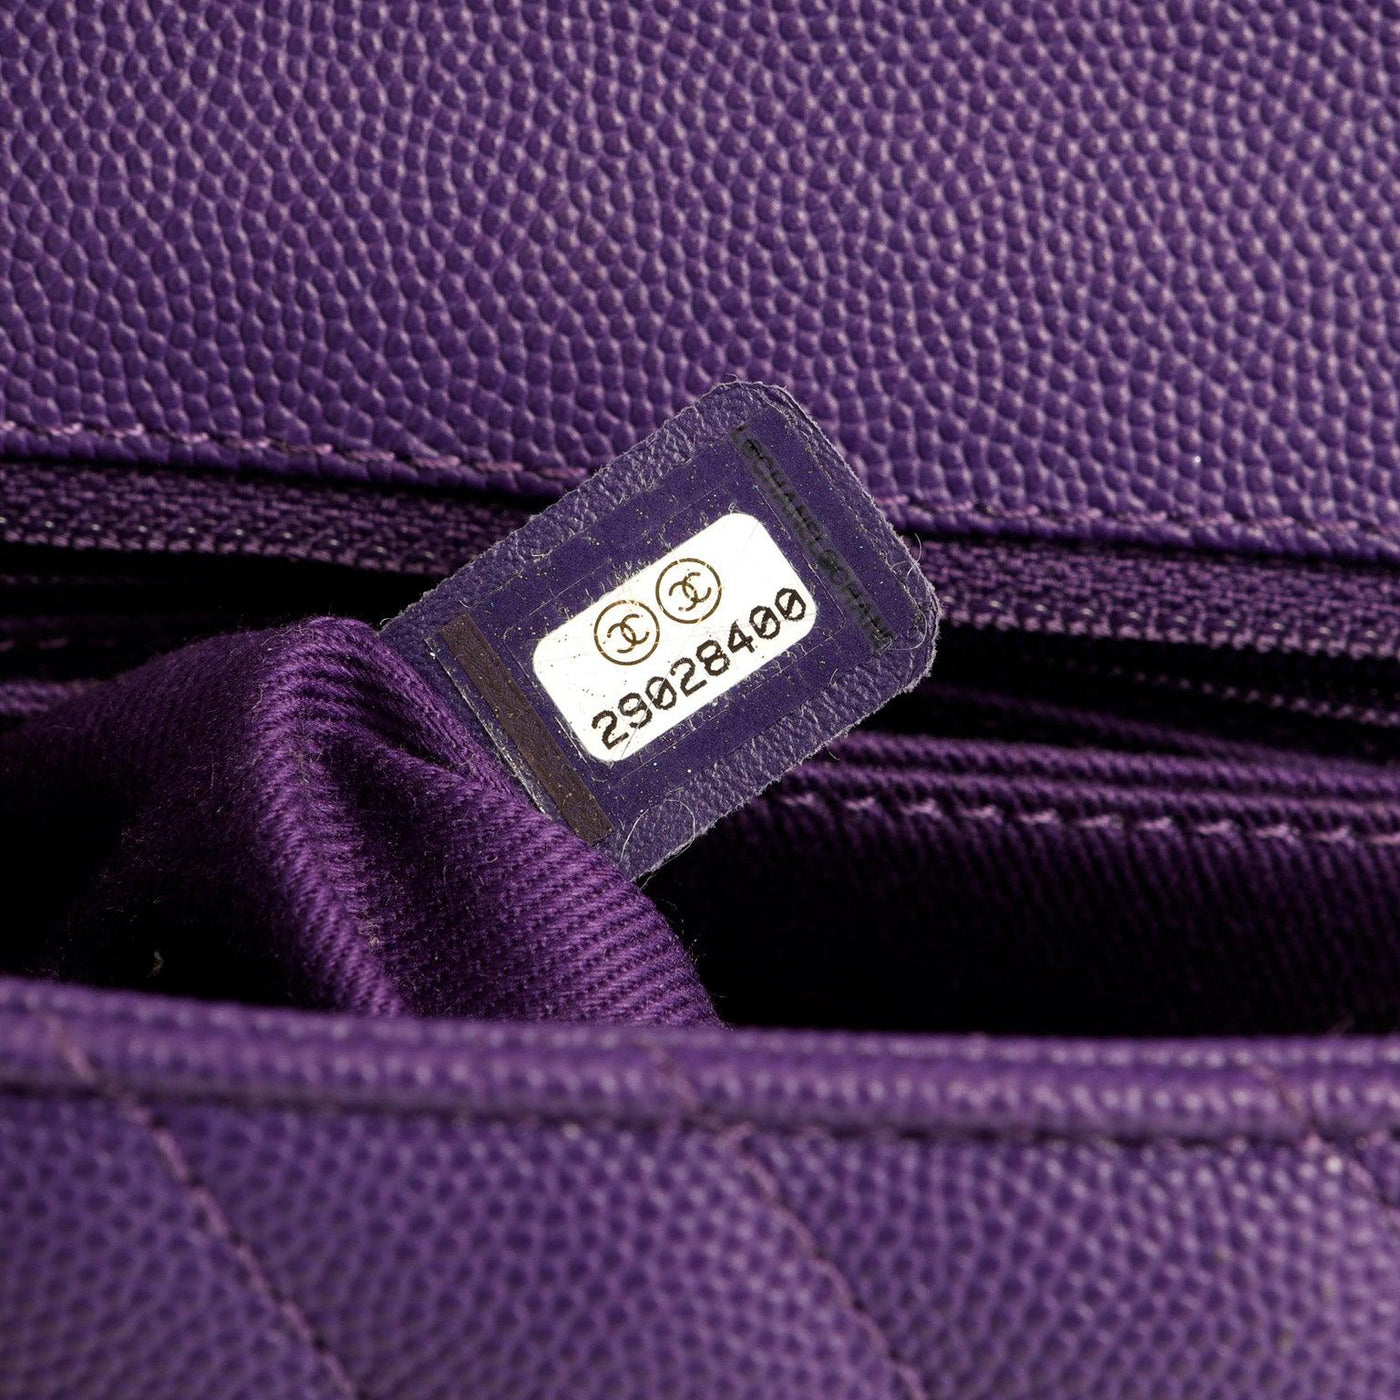 Chanel Purple Caviar Chevron Mini Coco Handle Bag - Only Authentics